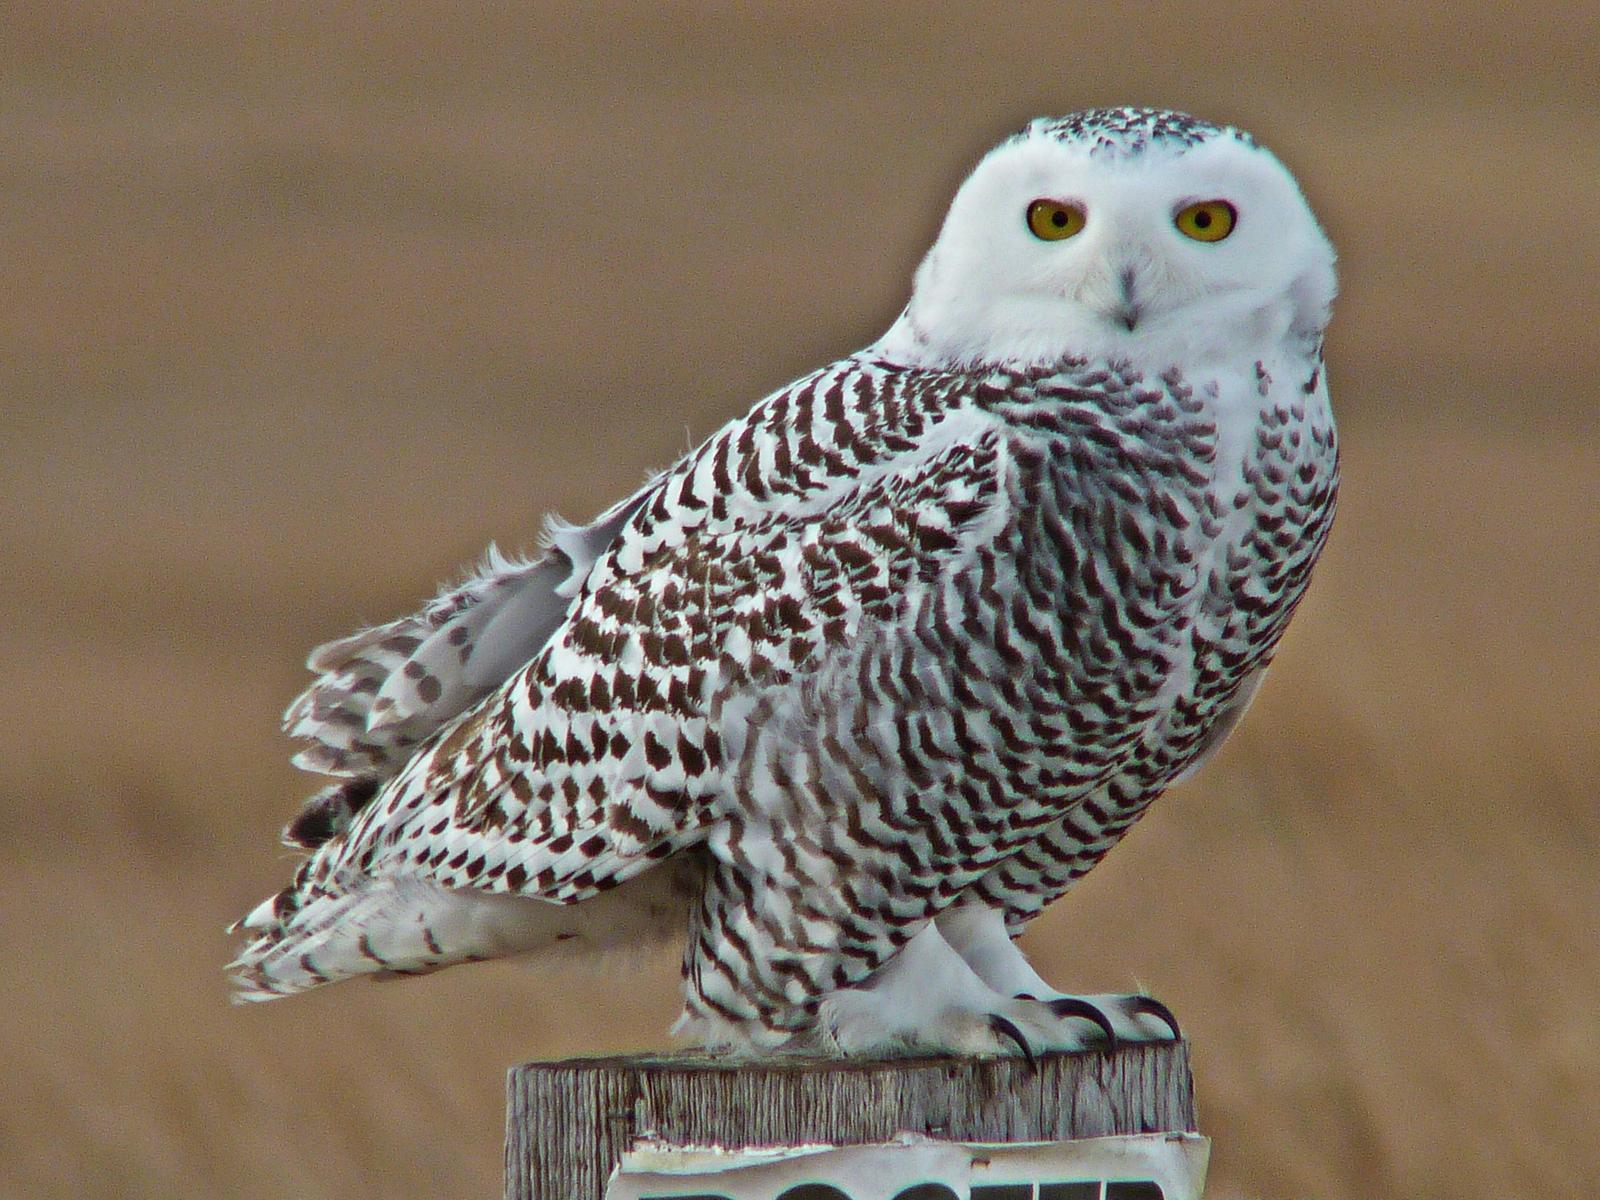 Snowy Owl Photo by Bob Neugebauer